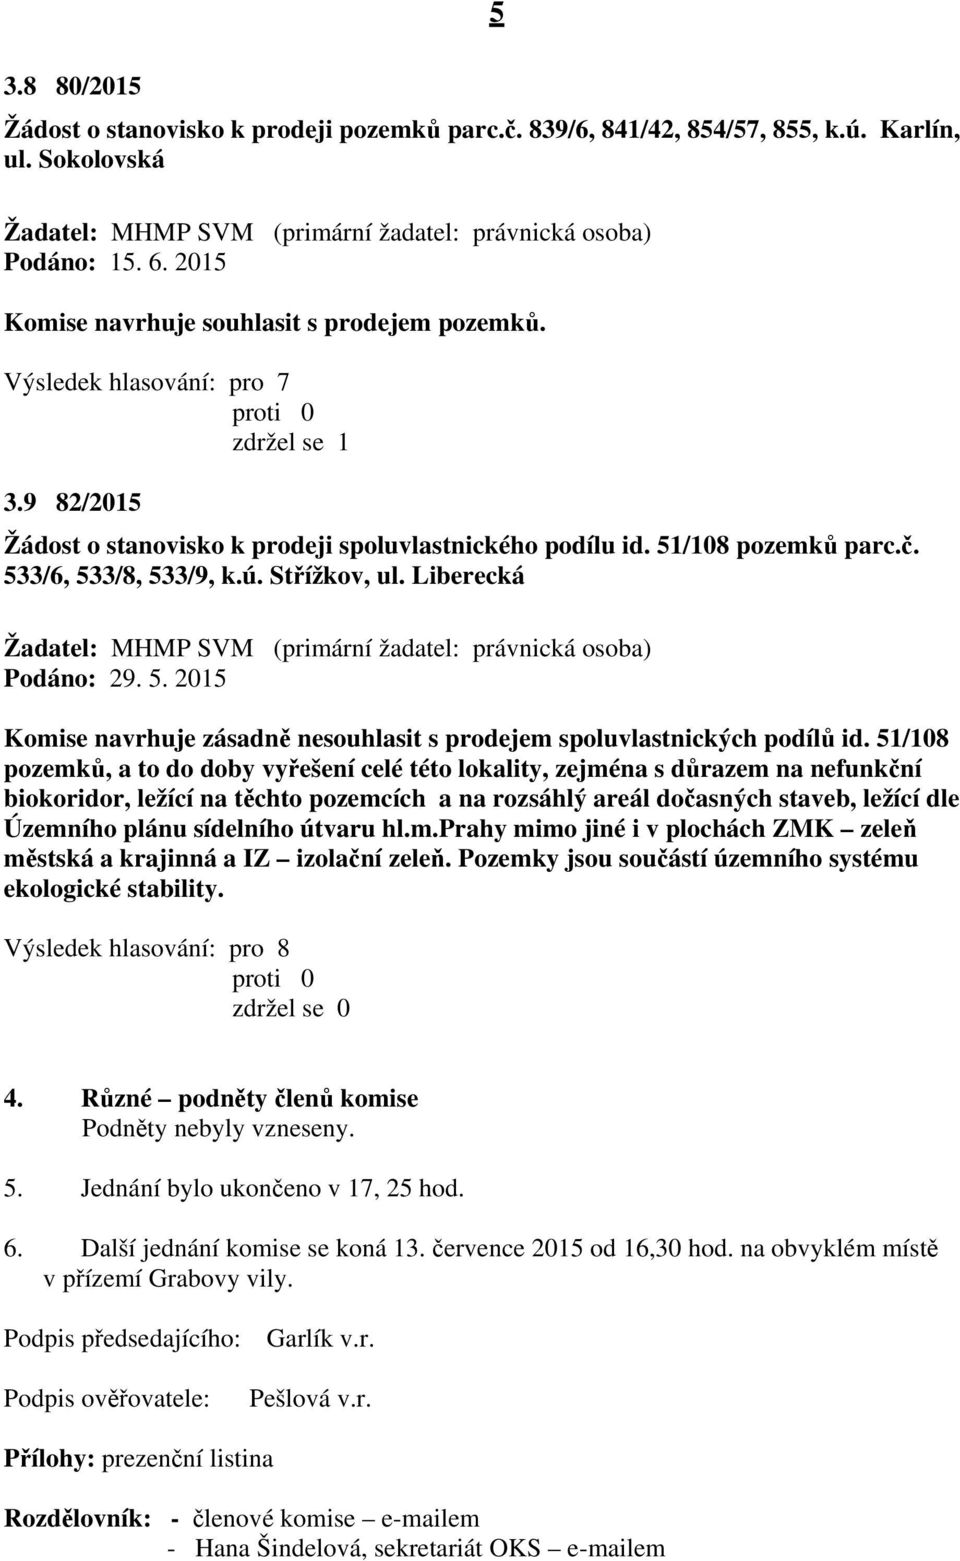 533/6, 533/8, 533/9, k.ú. Střížkov, ul. Liberecká (primární žadatel: právnická osoba) Podáno: 29. 5. 2015 Komise navrhuje zásadně nesouhlasit s prodejem spoluvlastnických podílů id.